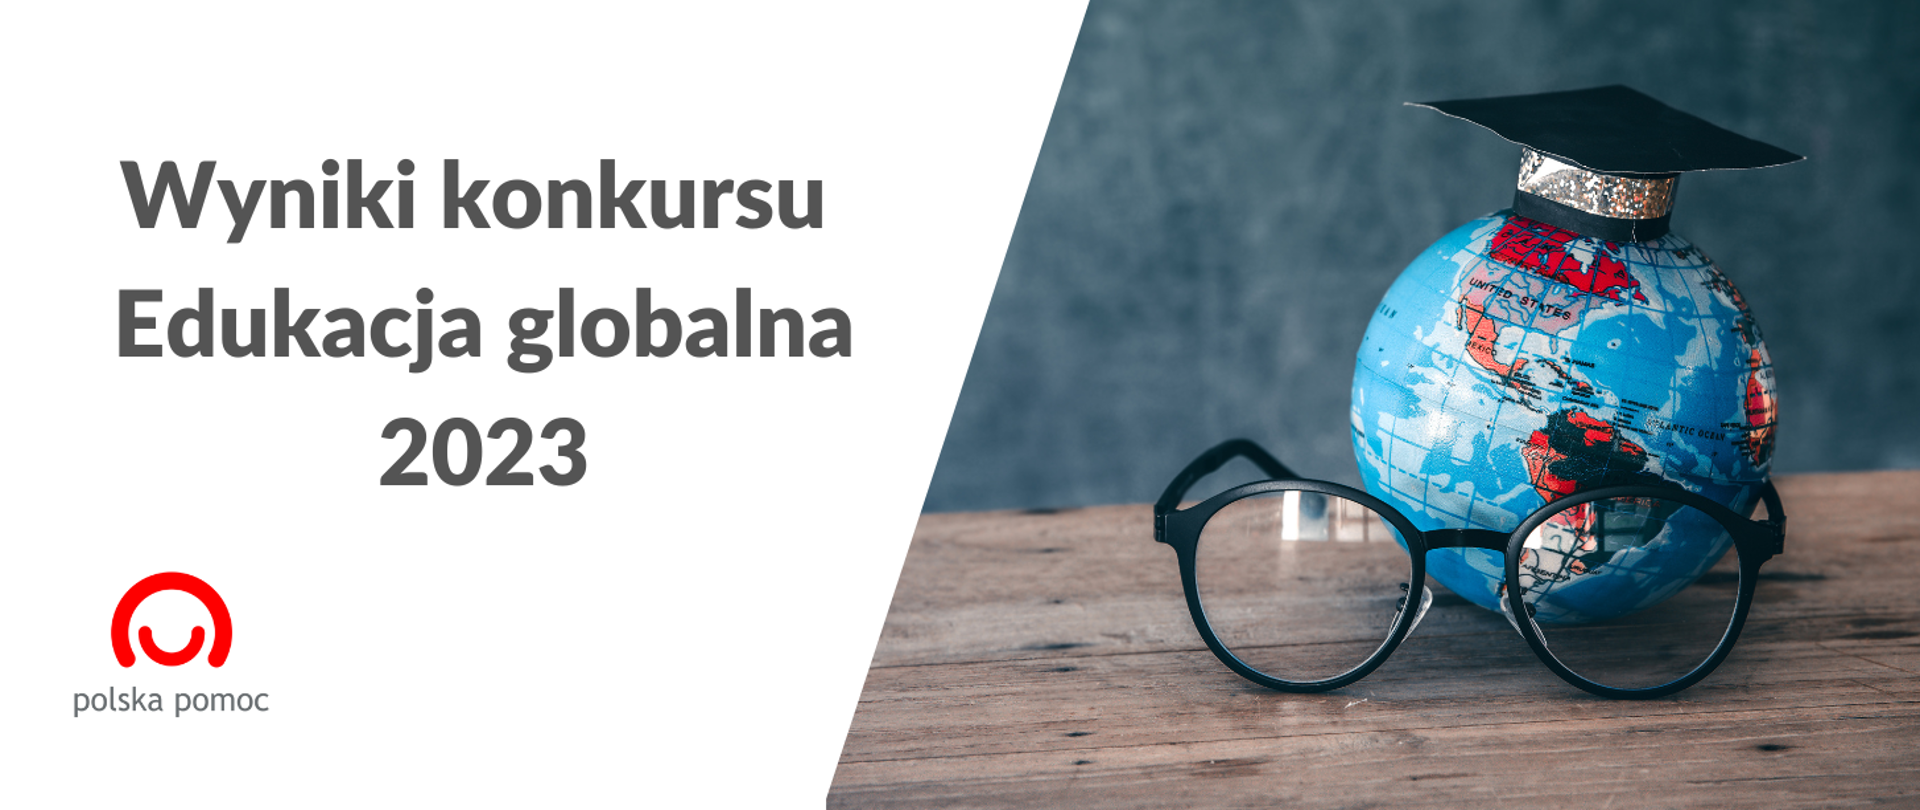 Grafika z napisem "wyniki konkursu Edukacja globalna 2023", logo Polskiej pomocy oraz zdjęciem. Zdjęcie przedstawia globus z biretem i okularami.